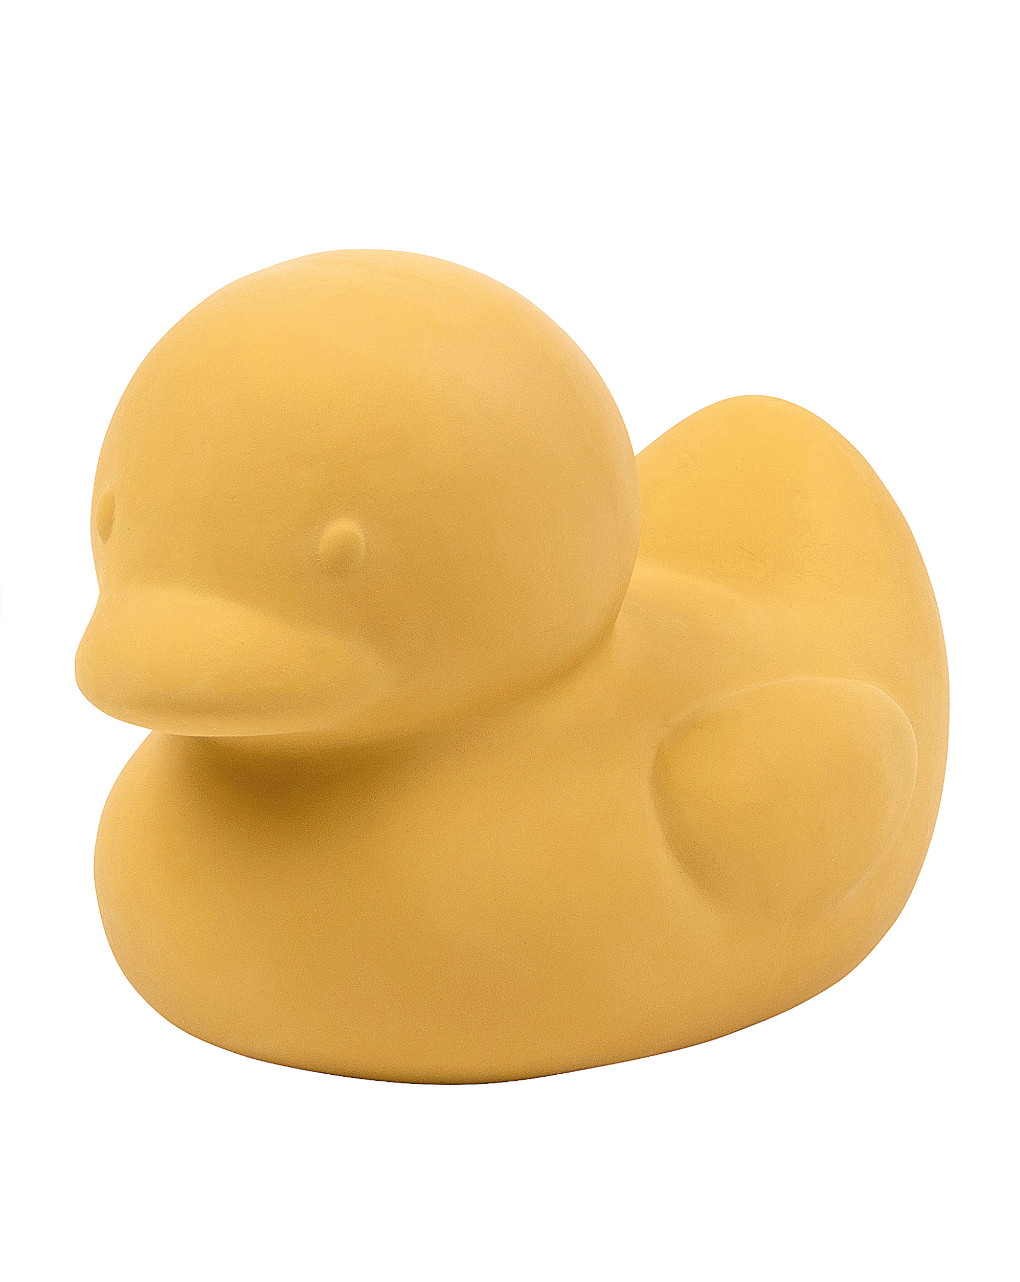 Pato amarelo (borracha) - nattou - Nattou